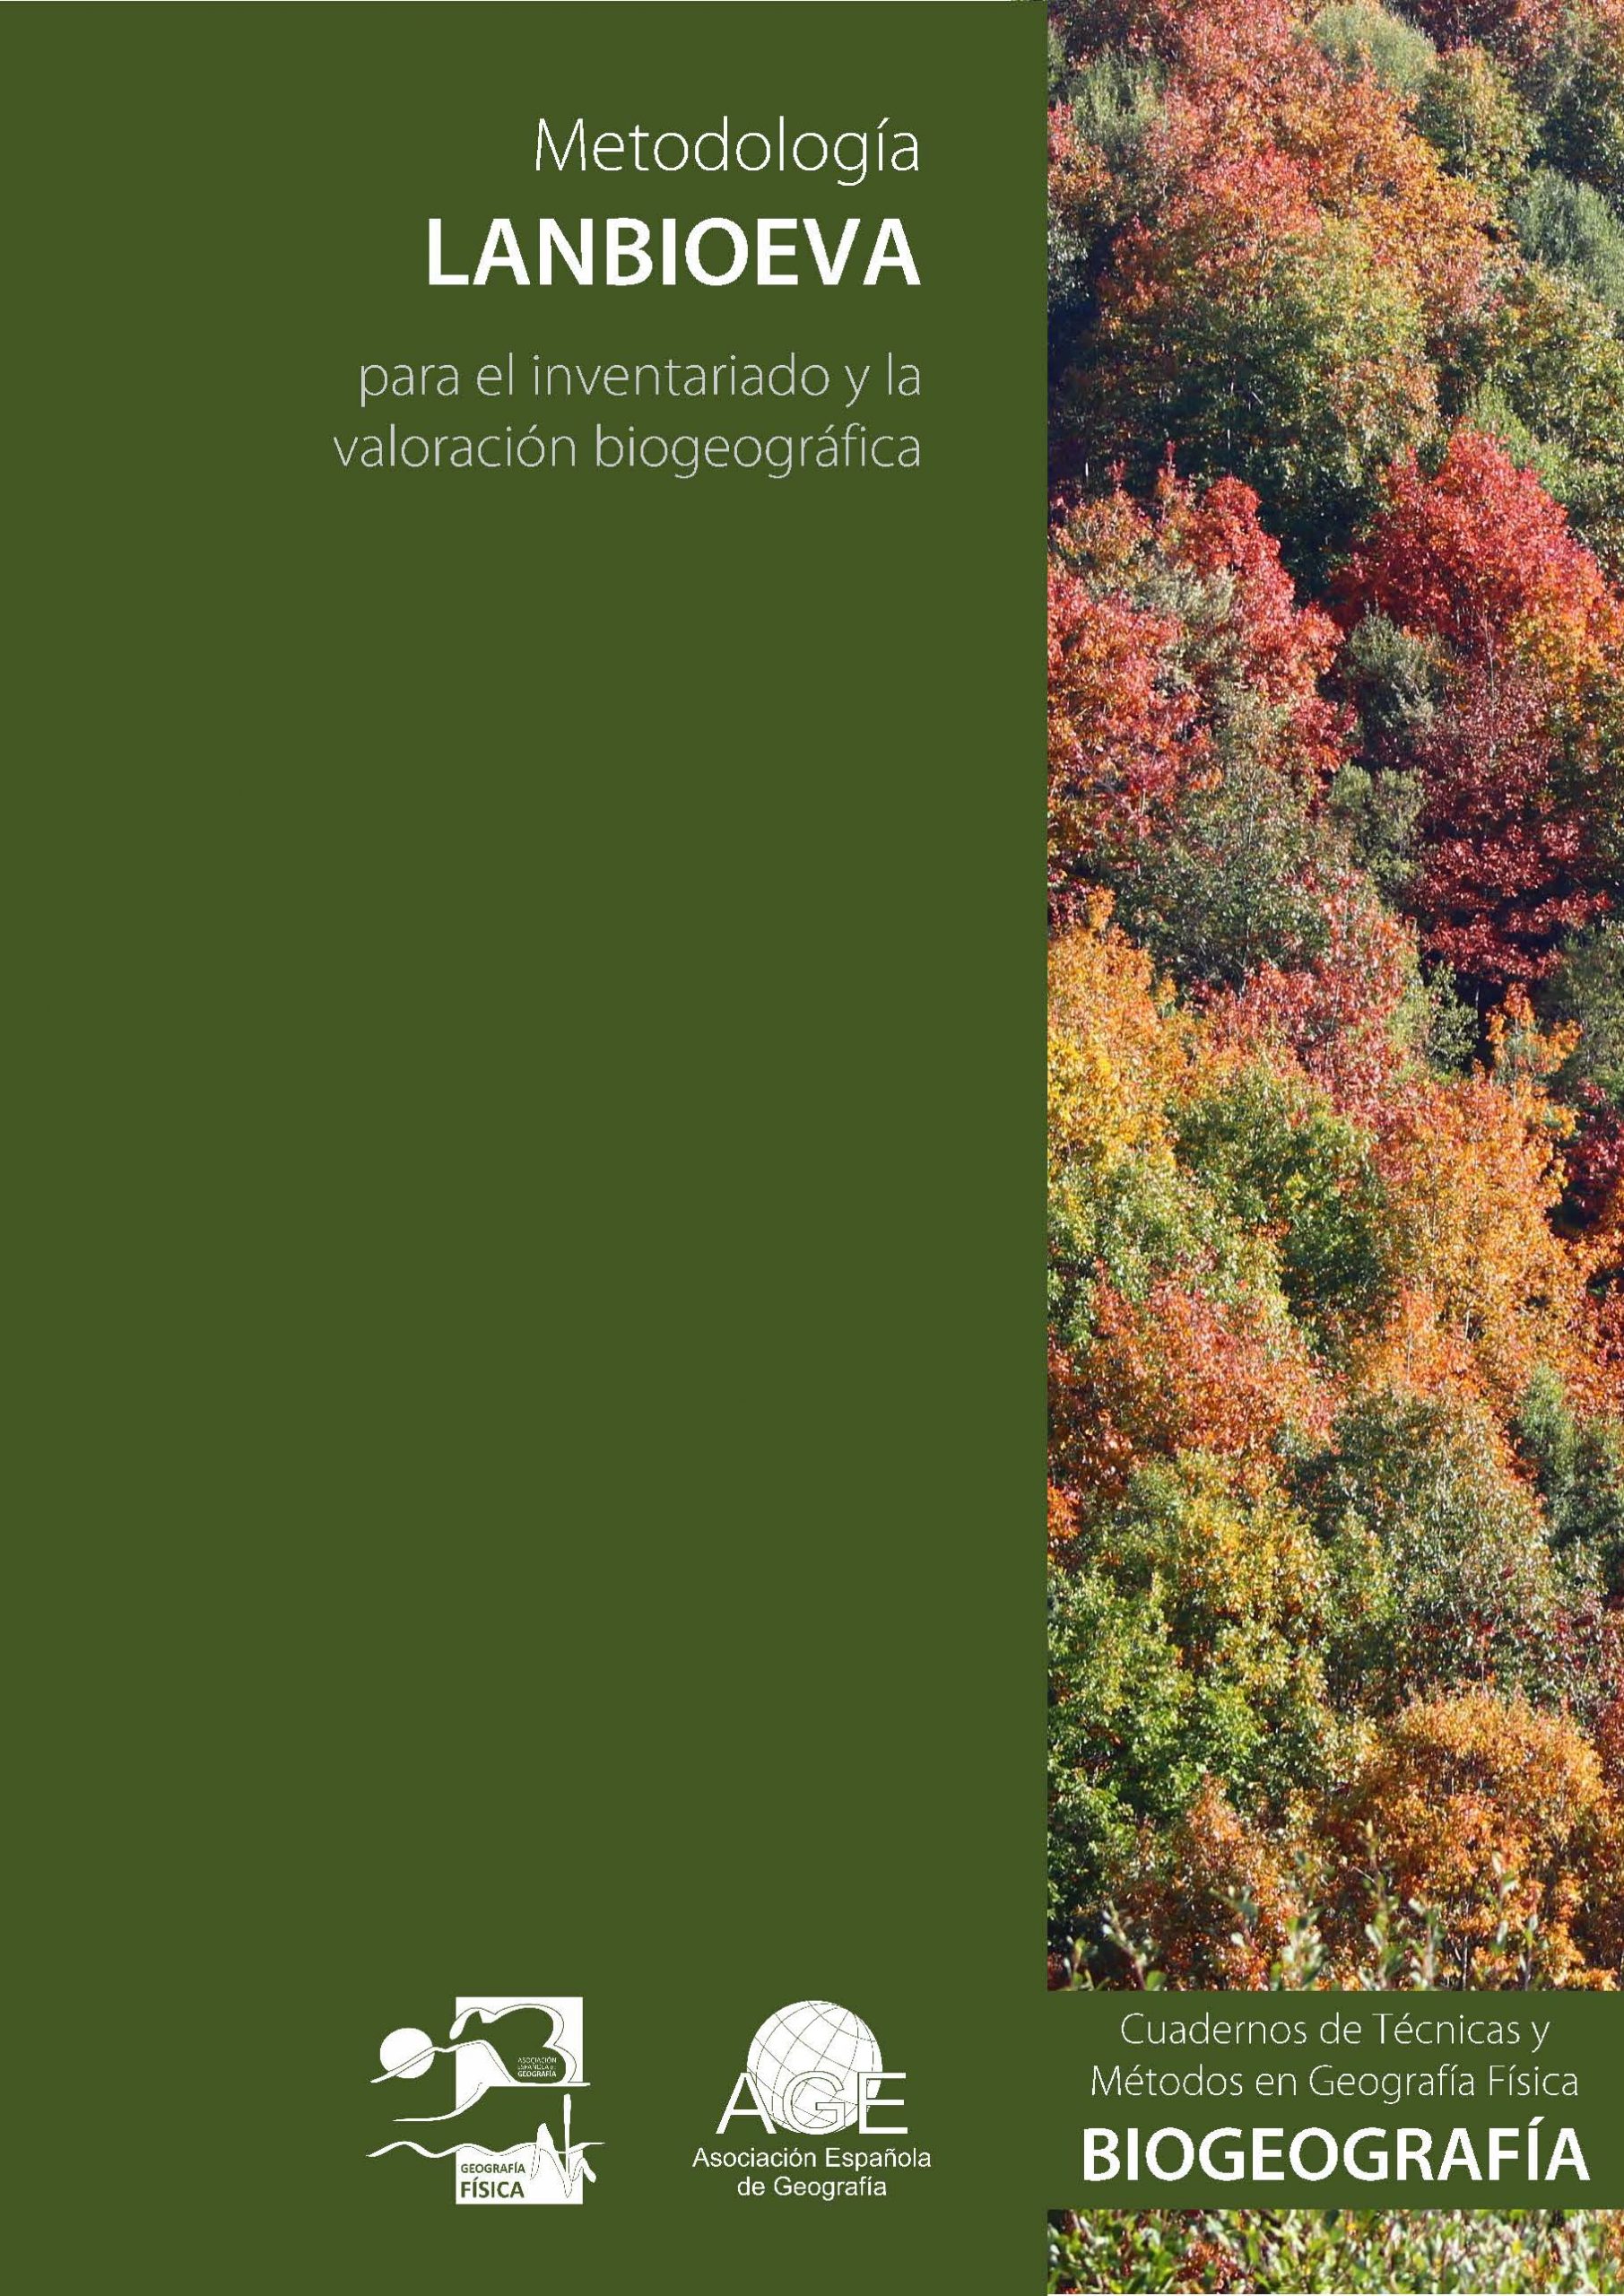 Portada de la monografía Lanbioeva - AGE - Asociación Española de Geografía